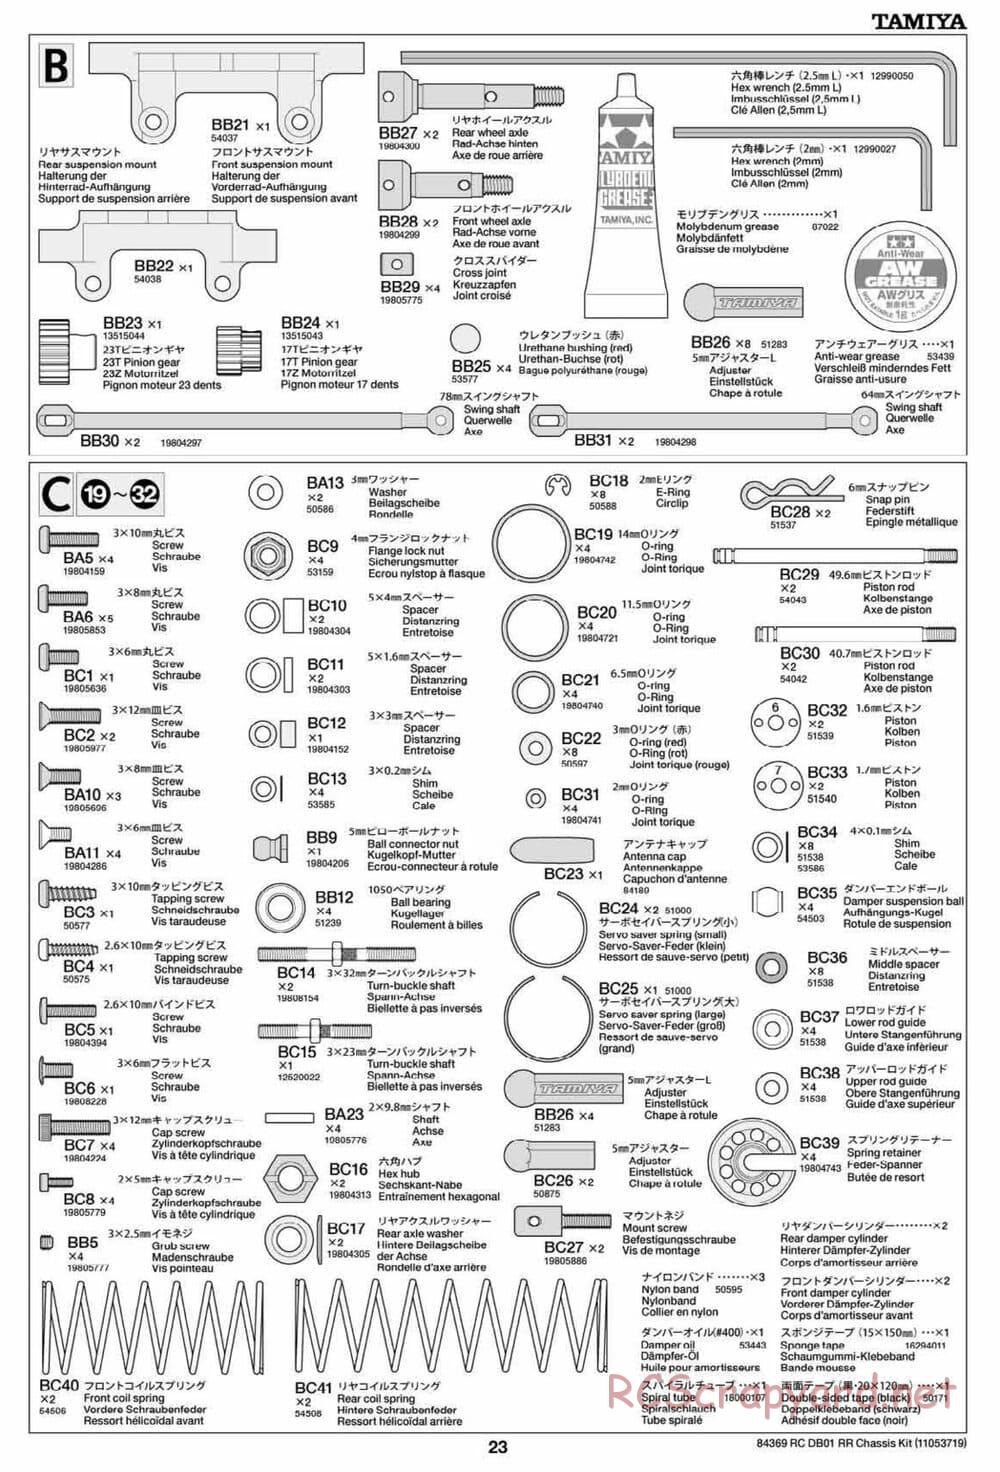 Tamiya - DB-01 RR Chassis - Manual - Page 23